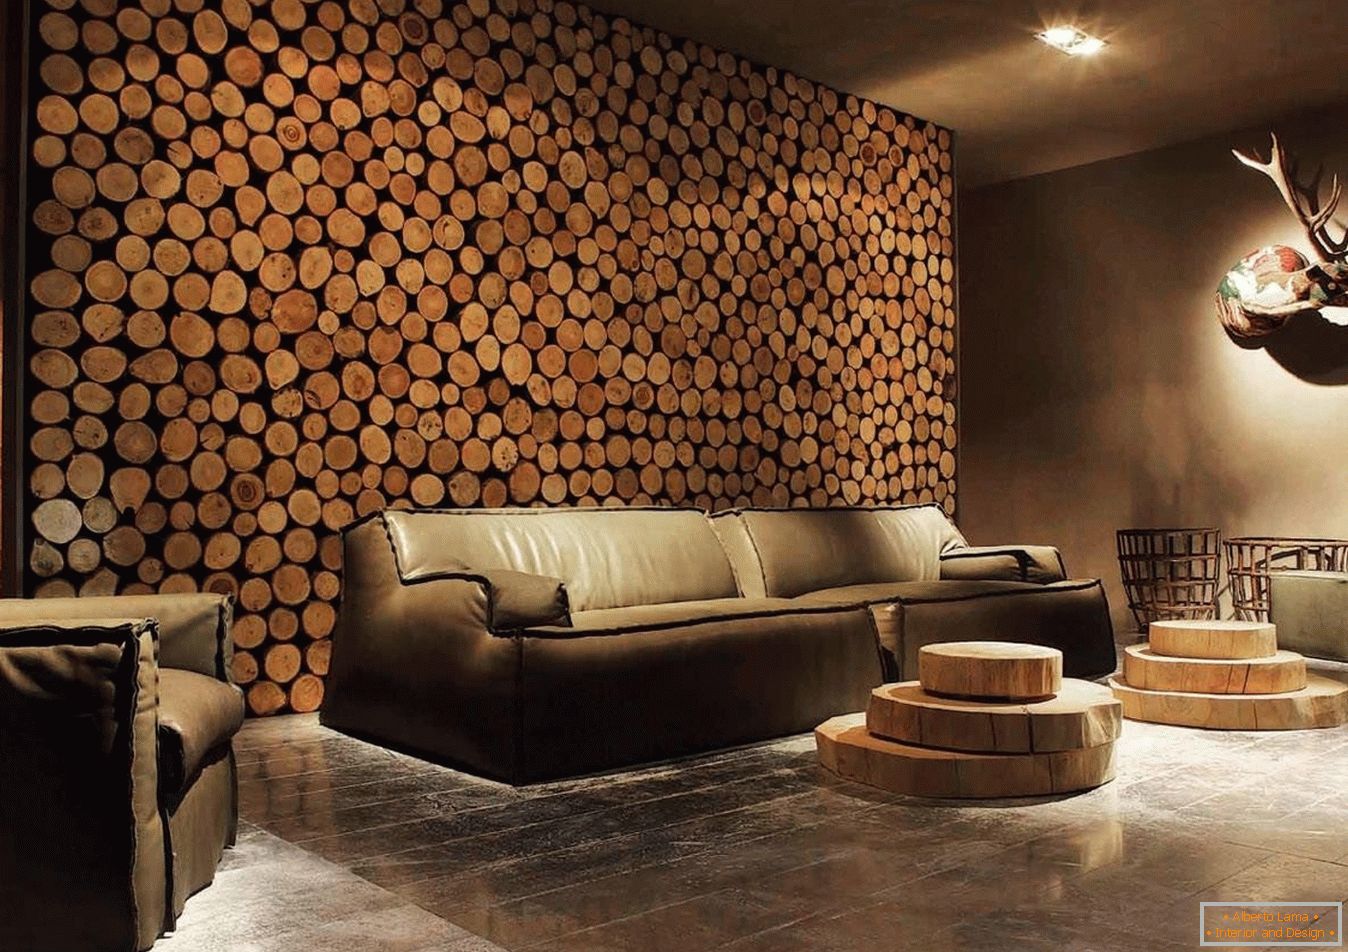 Spilos de madeira de madeira como decoração das paredes da sala